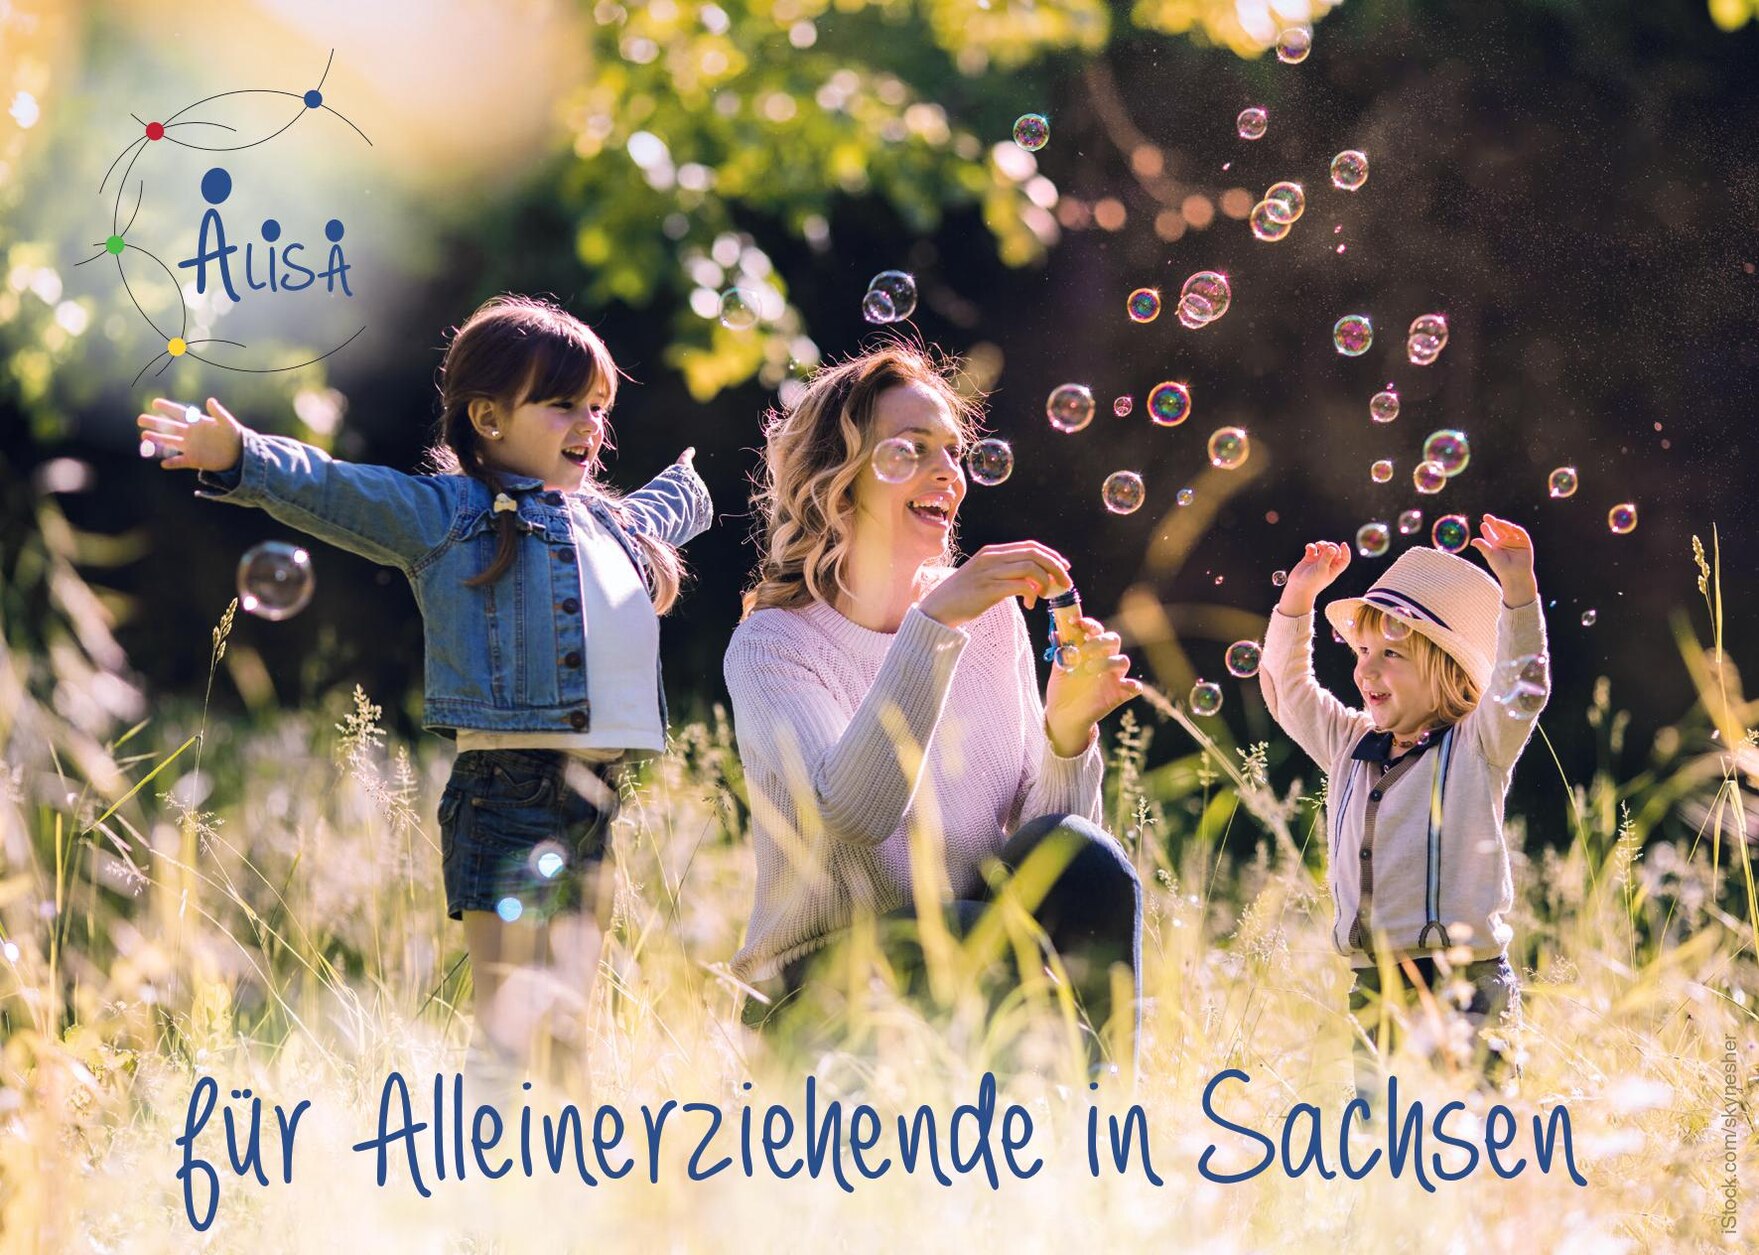 Alleinerziehende Mutter spielt mit ihren beiden Kindern auf einer Wiese. Die Kinder und die Mutter spielen mit Seifenblasen. Unter dem Bild steht für Alleinerziehende in Sachsen.